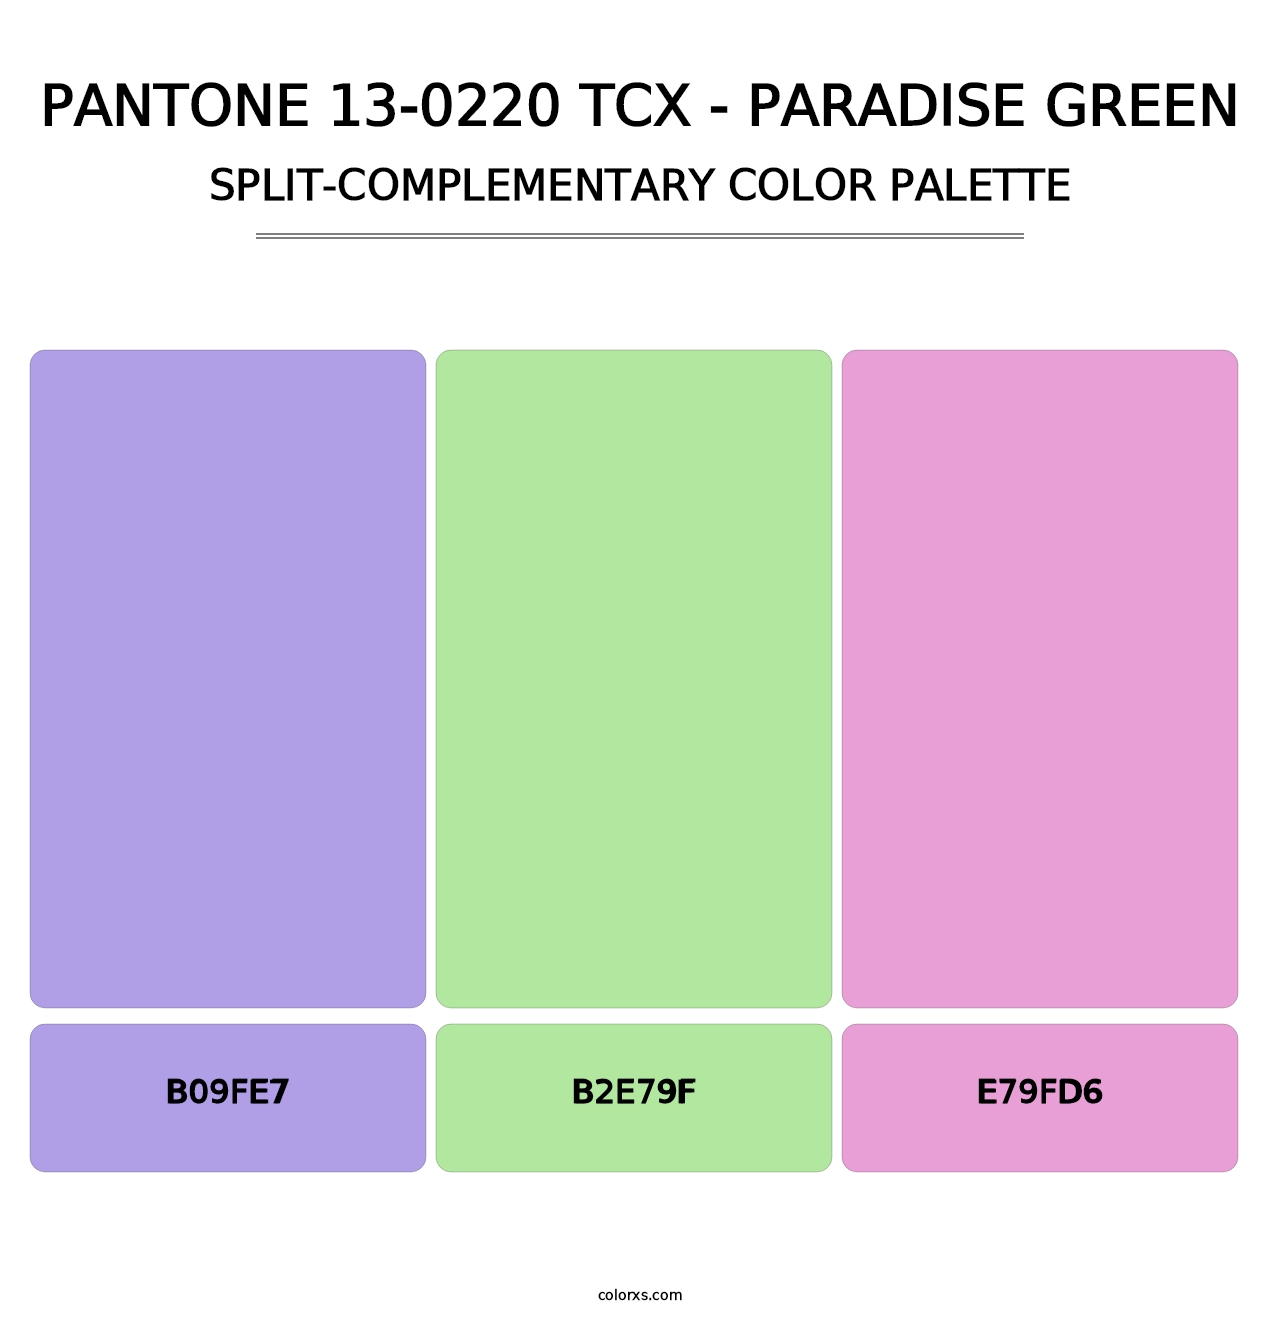 PANTONE 13-0220 TCX - Paradise Green - Split-Complementary Color Palette